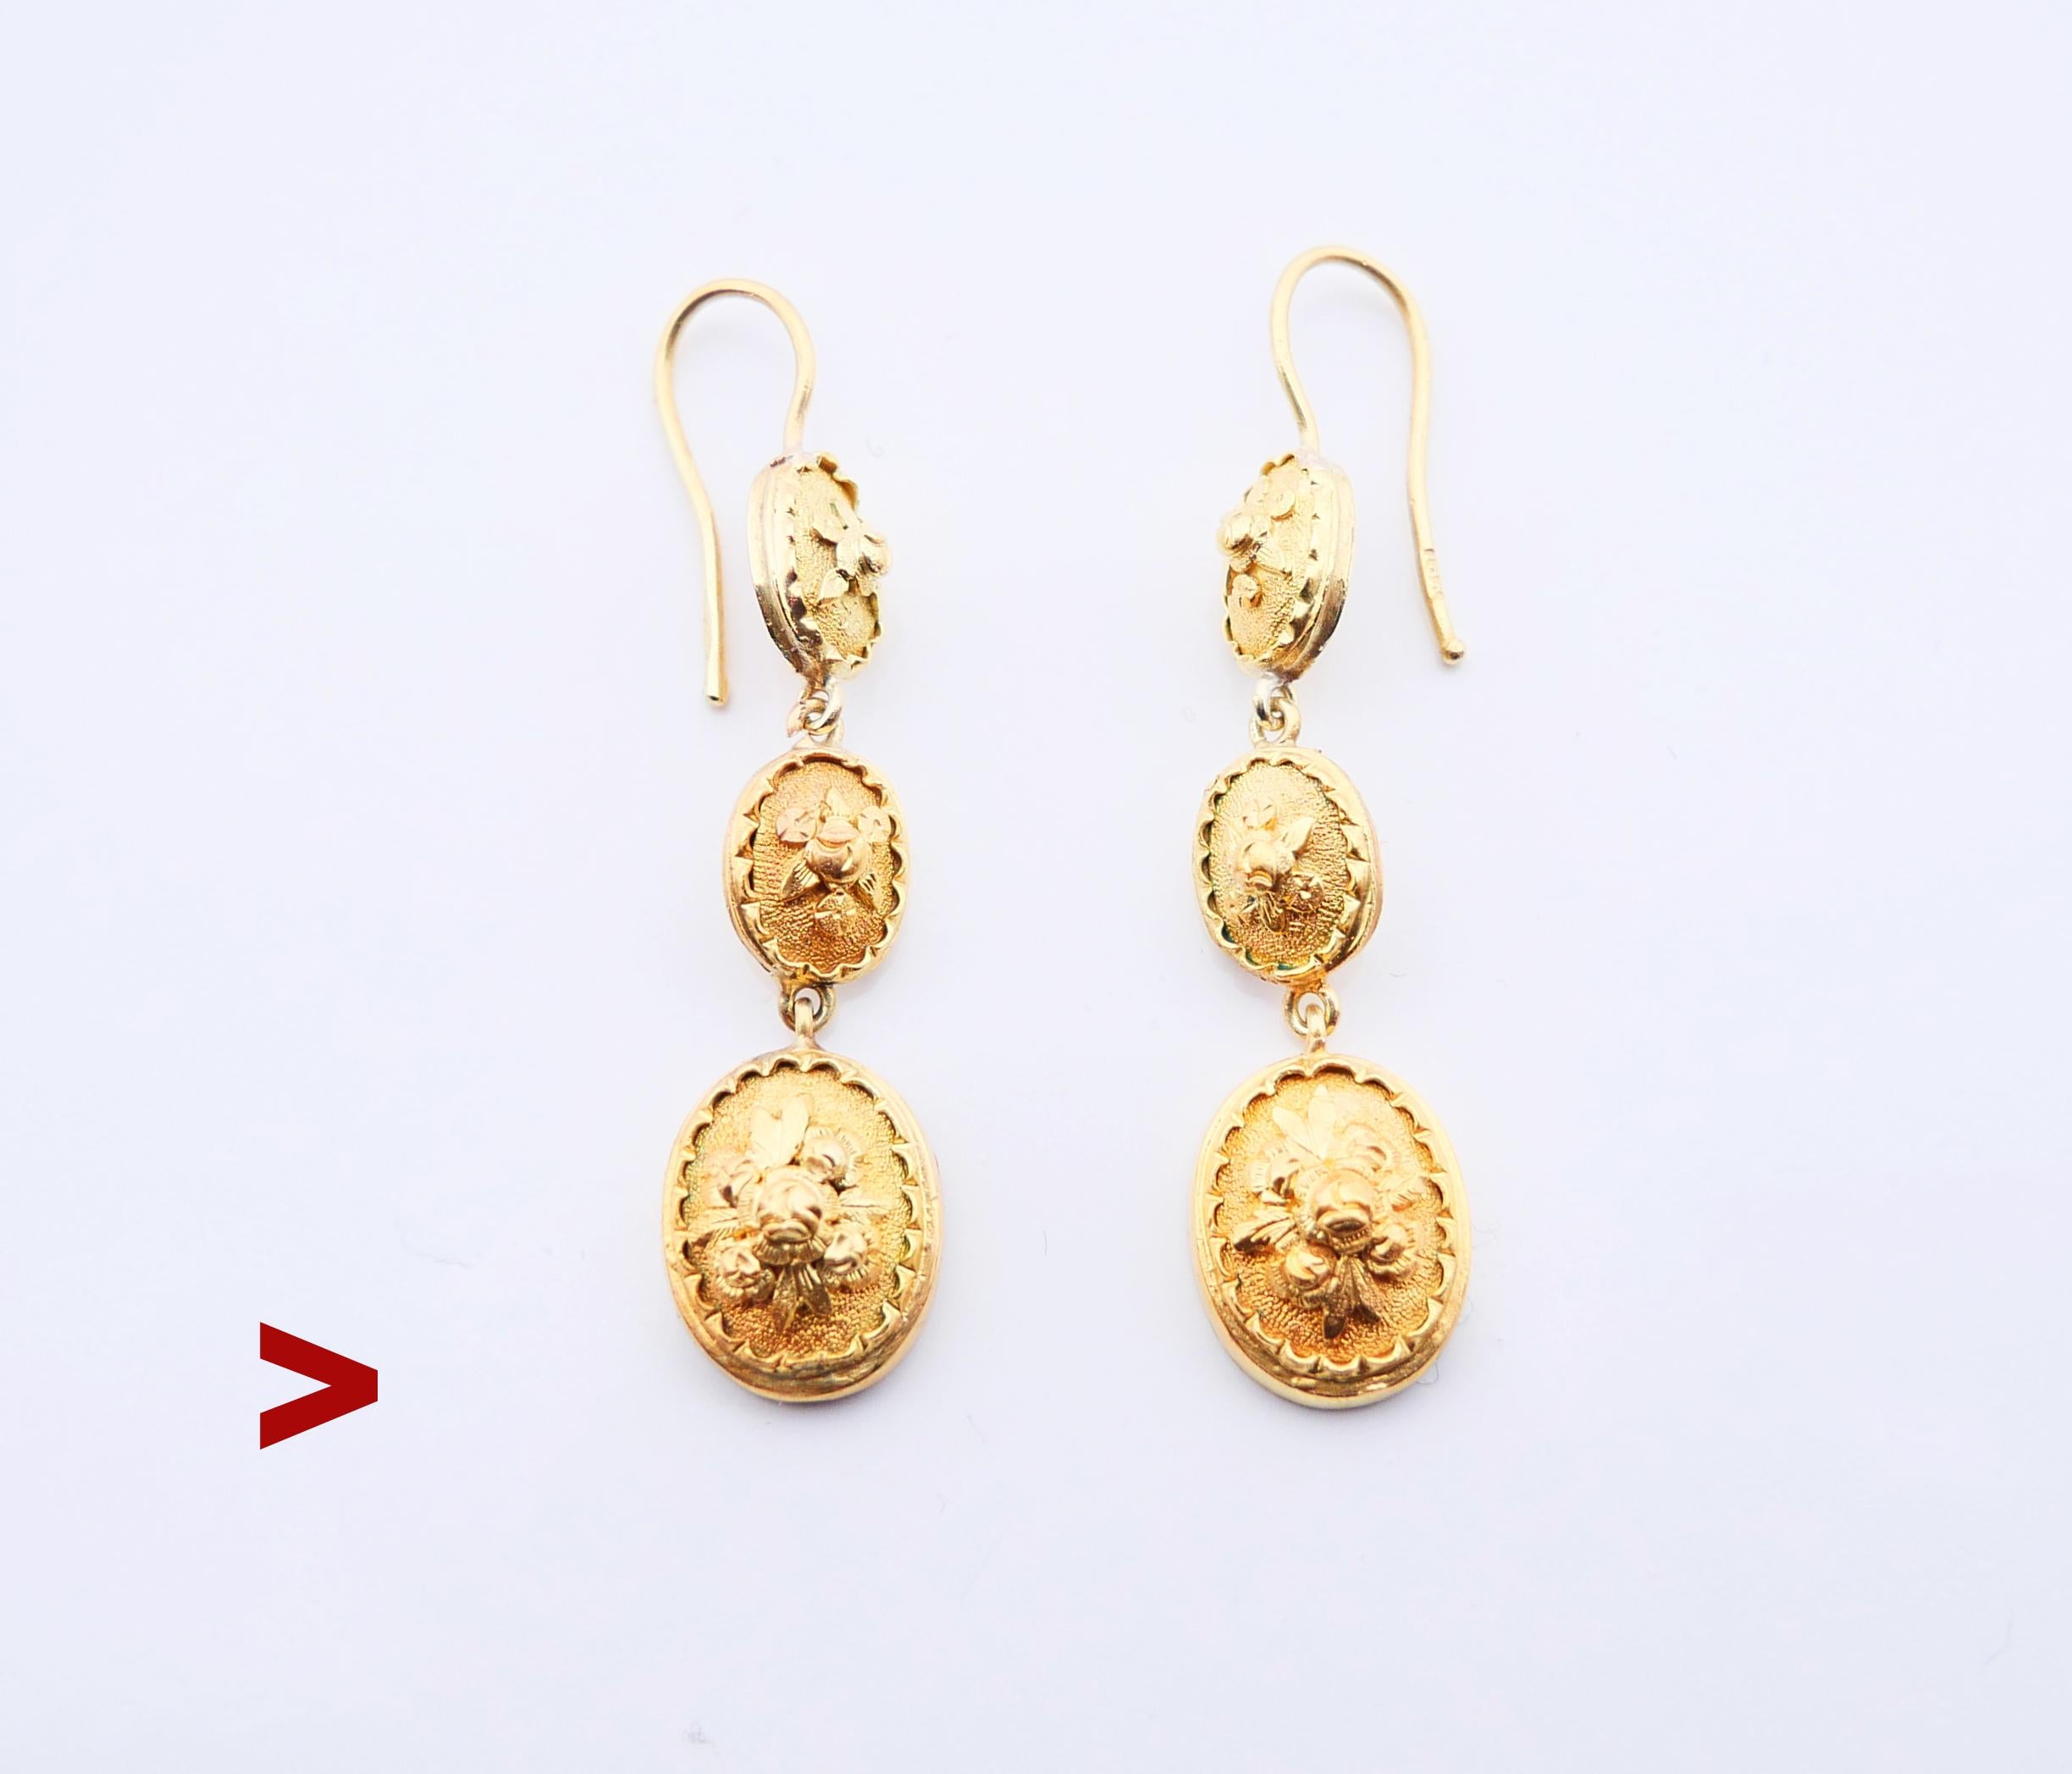 Ein Paar antike Ohrringe mit ovalen Medaillons in verschiedenen Größen, die mit gegossenen floralen Ornamenten verziert sind.

Hergestellt ca. Anfang der 1900er Jahre. Haken gestempelt 18K , Metall getestet massiv 18K Gelbgold.

Jeder Ohrring ist 47